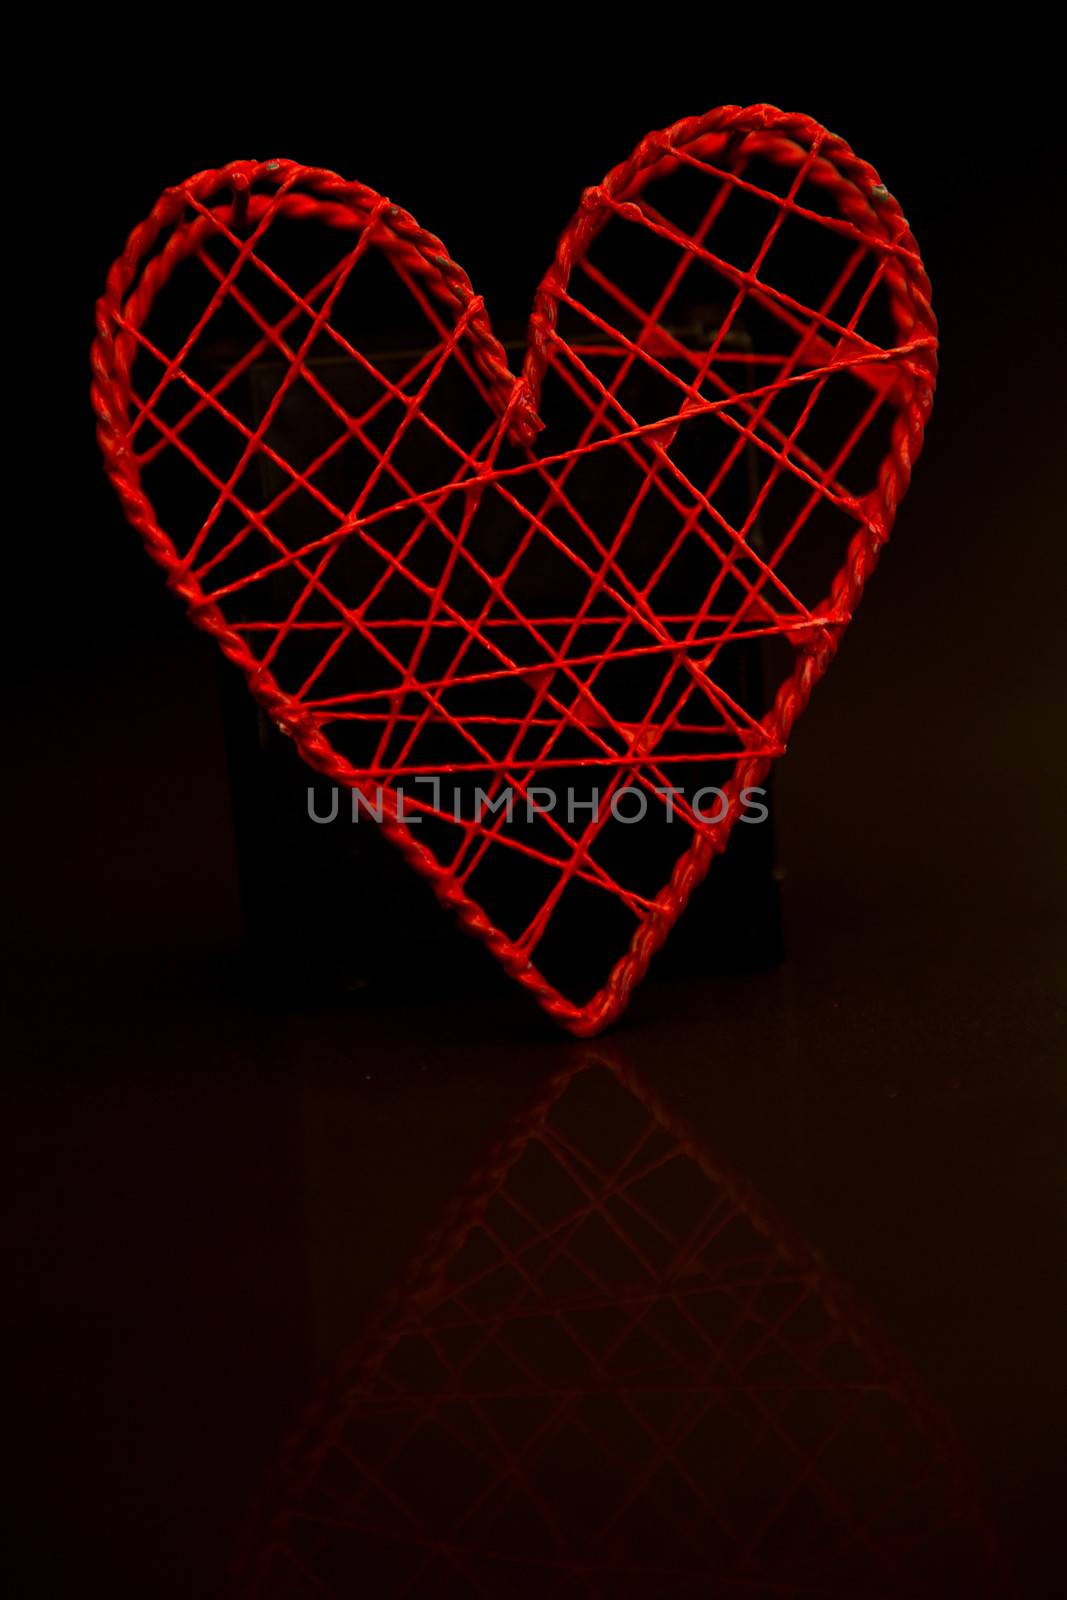 Love heart shaped box by Wavebreakmedia